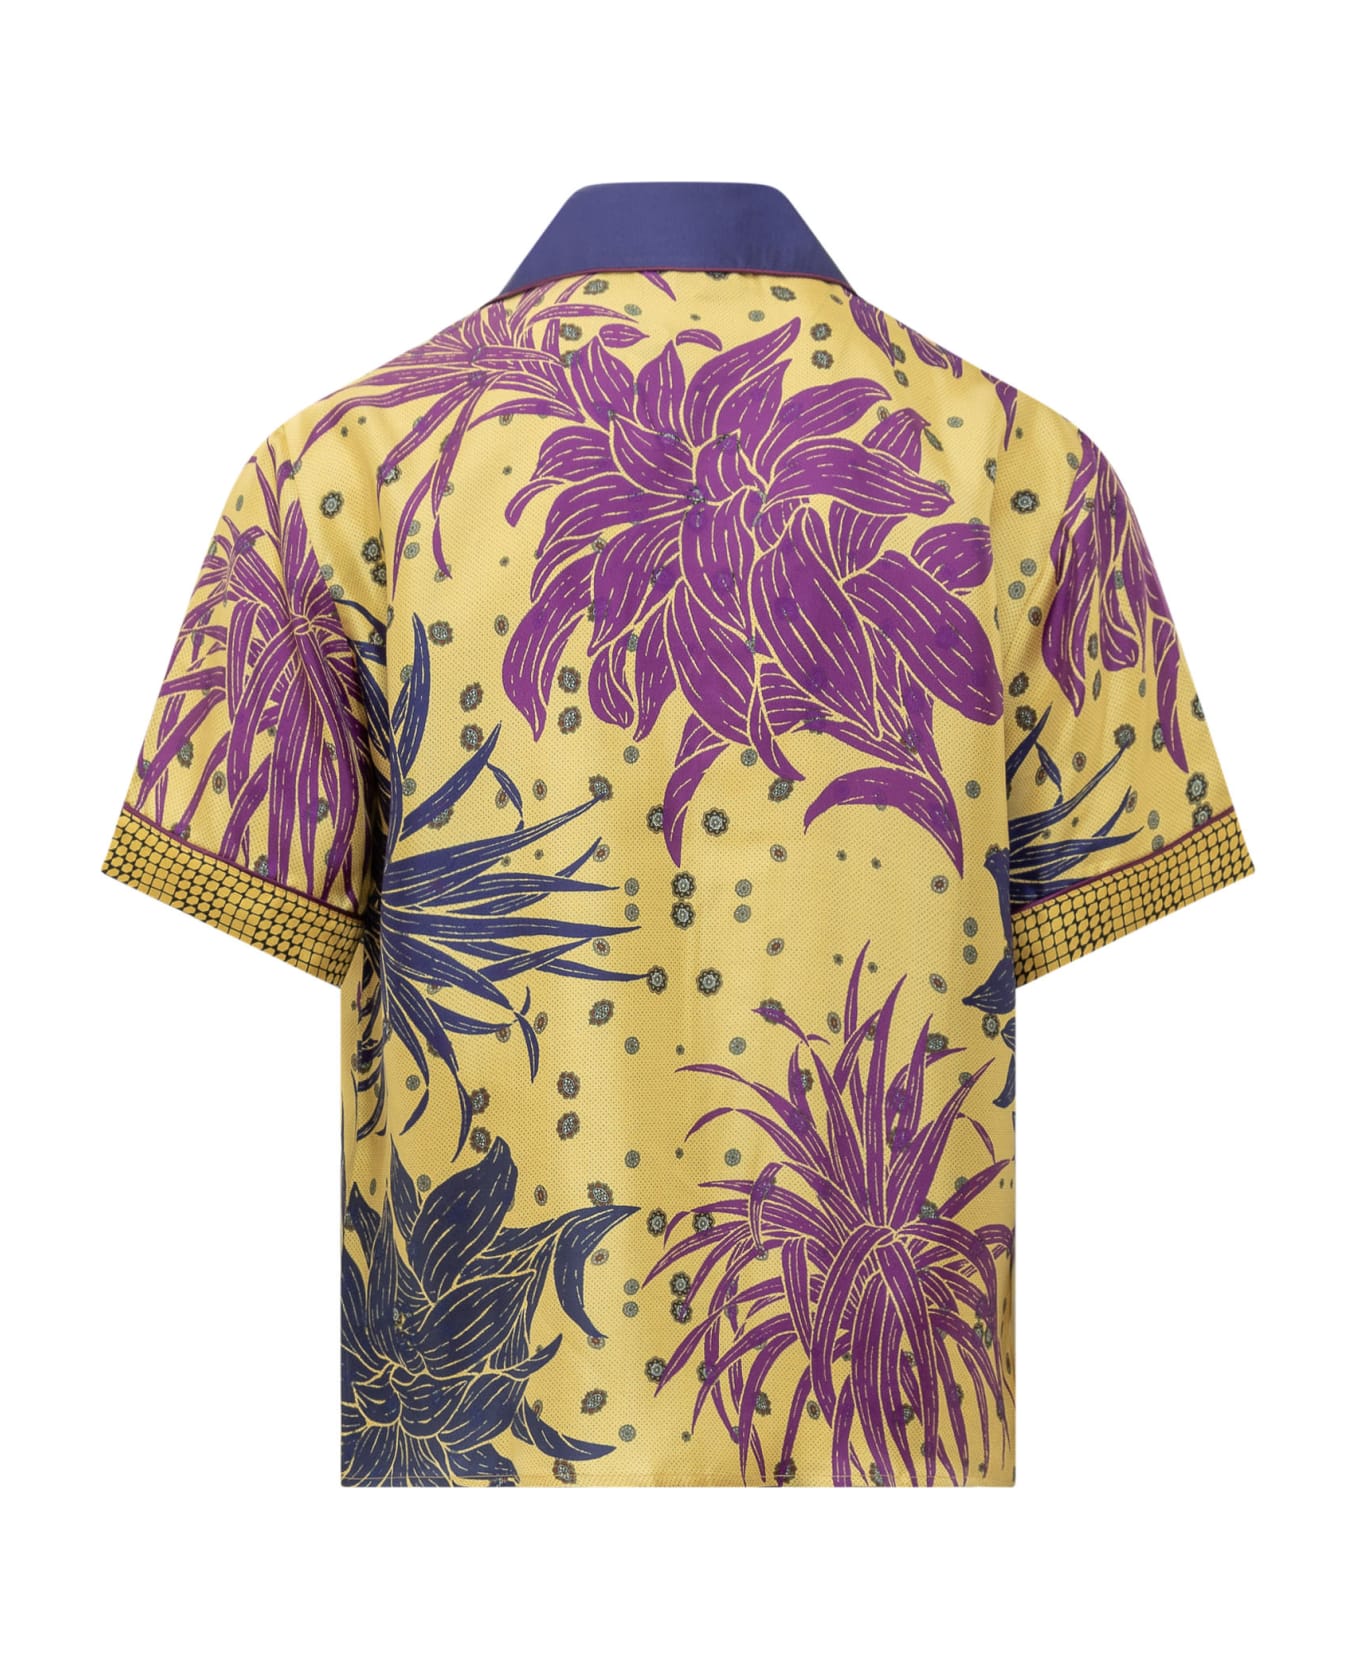 Pierre-Louis Mascia Silk Shirt - GIALLO FANTASIA シャツ